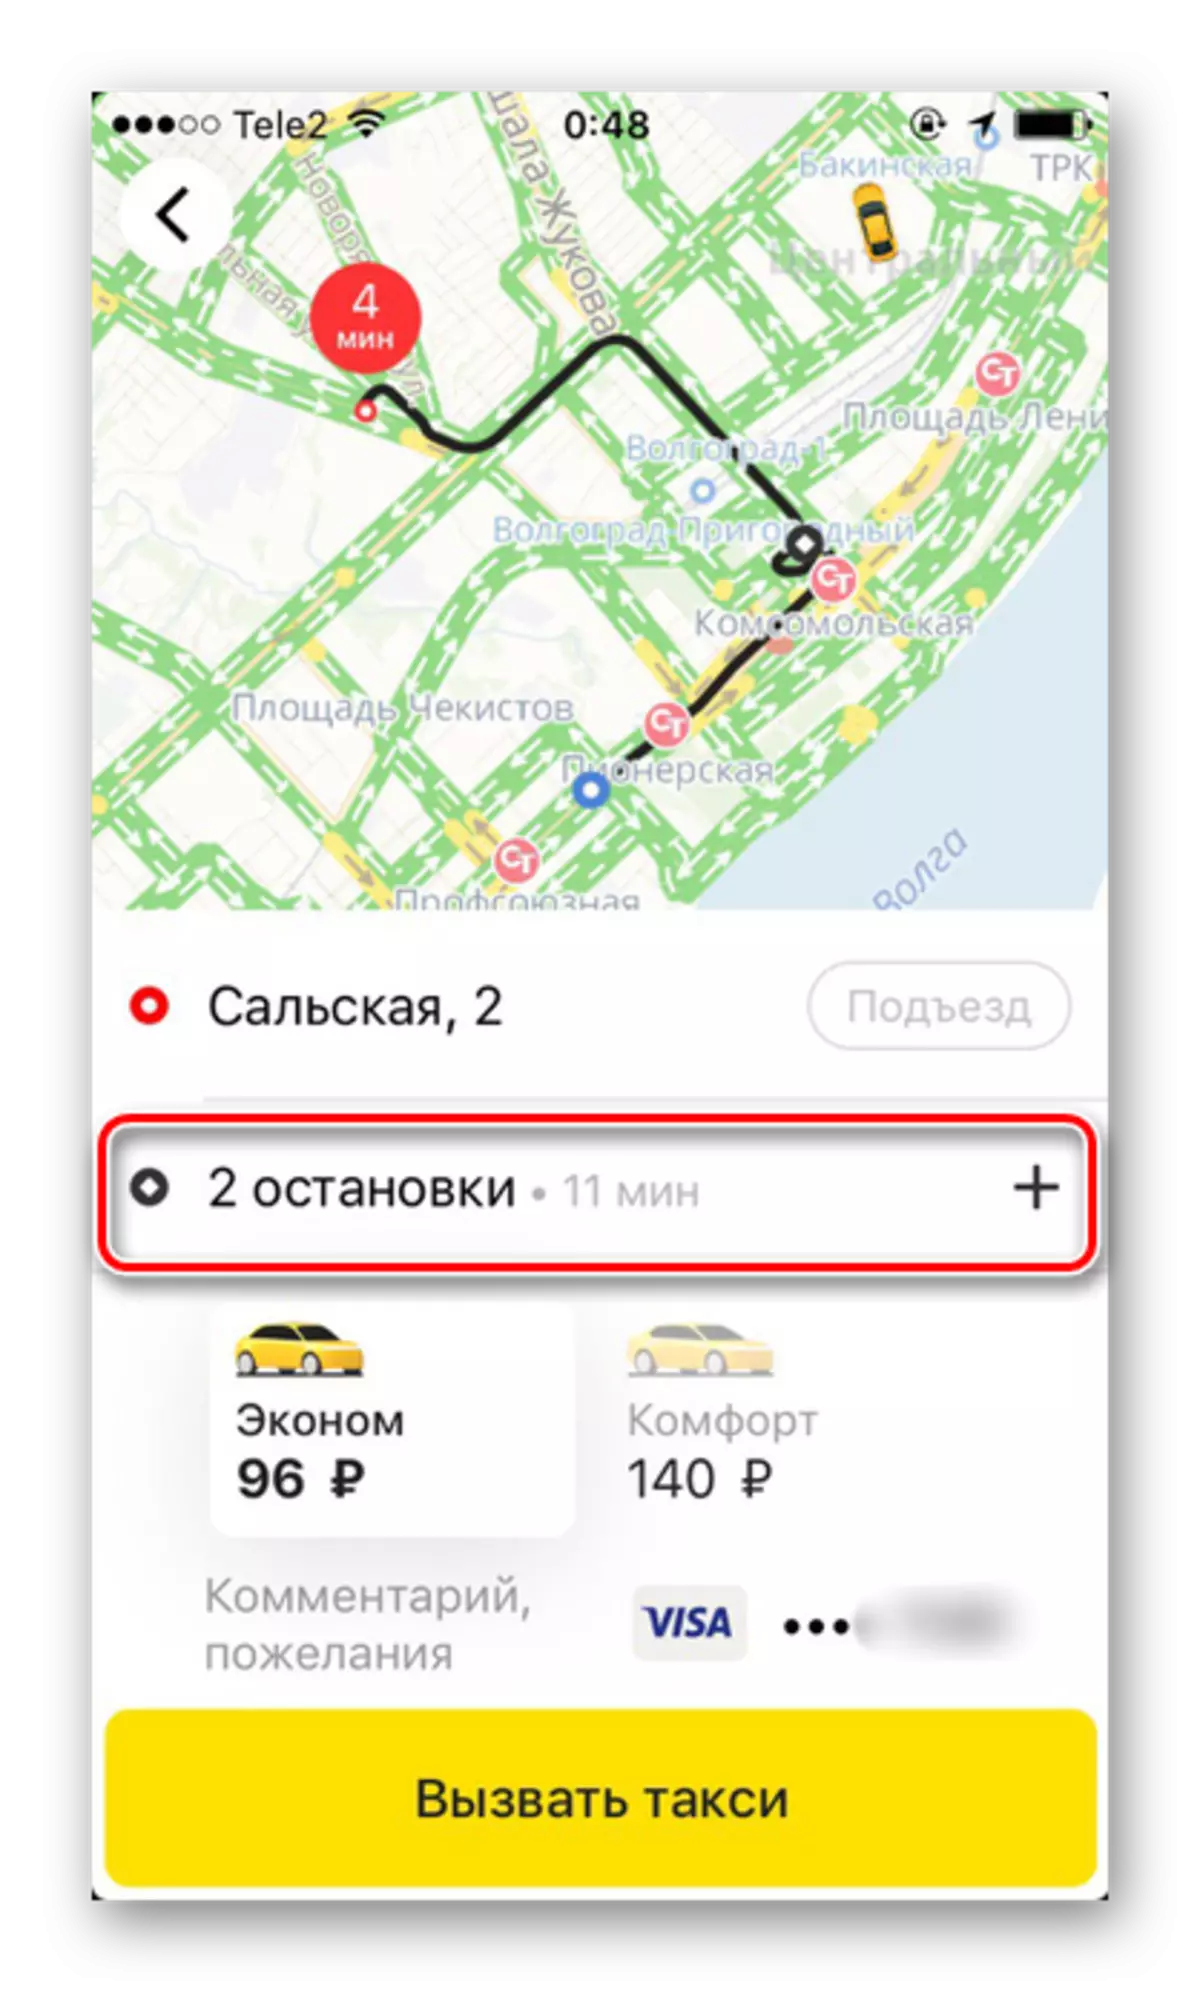 Un percorso complesso con più arresti quando si ordina un taxi in yandex.taxi applicazione su iPhone